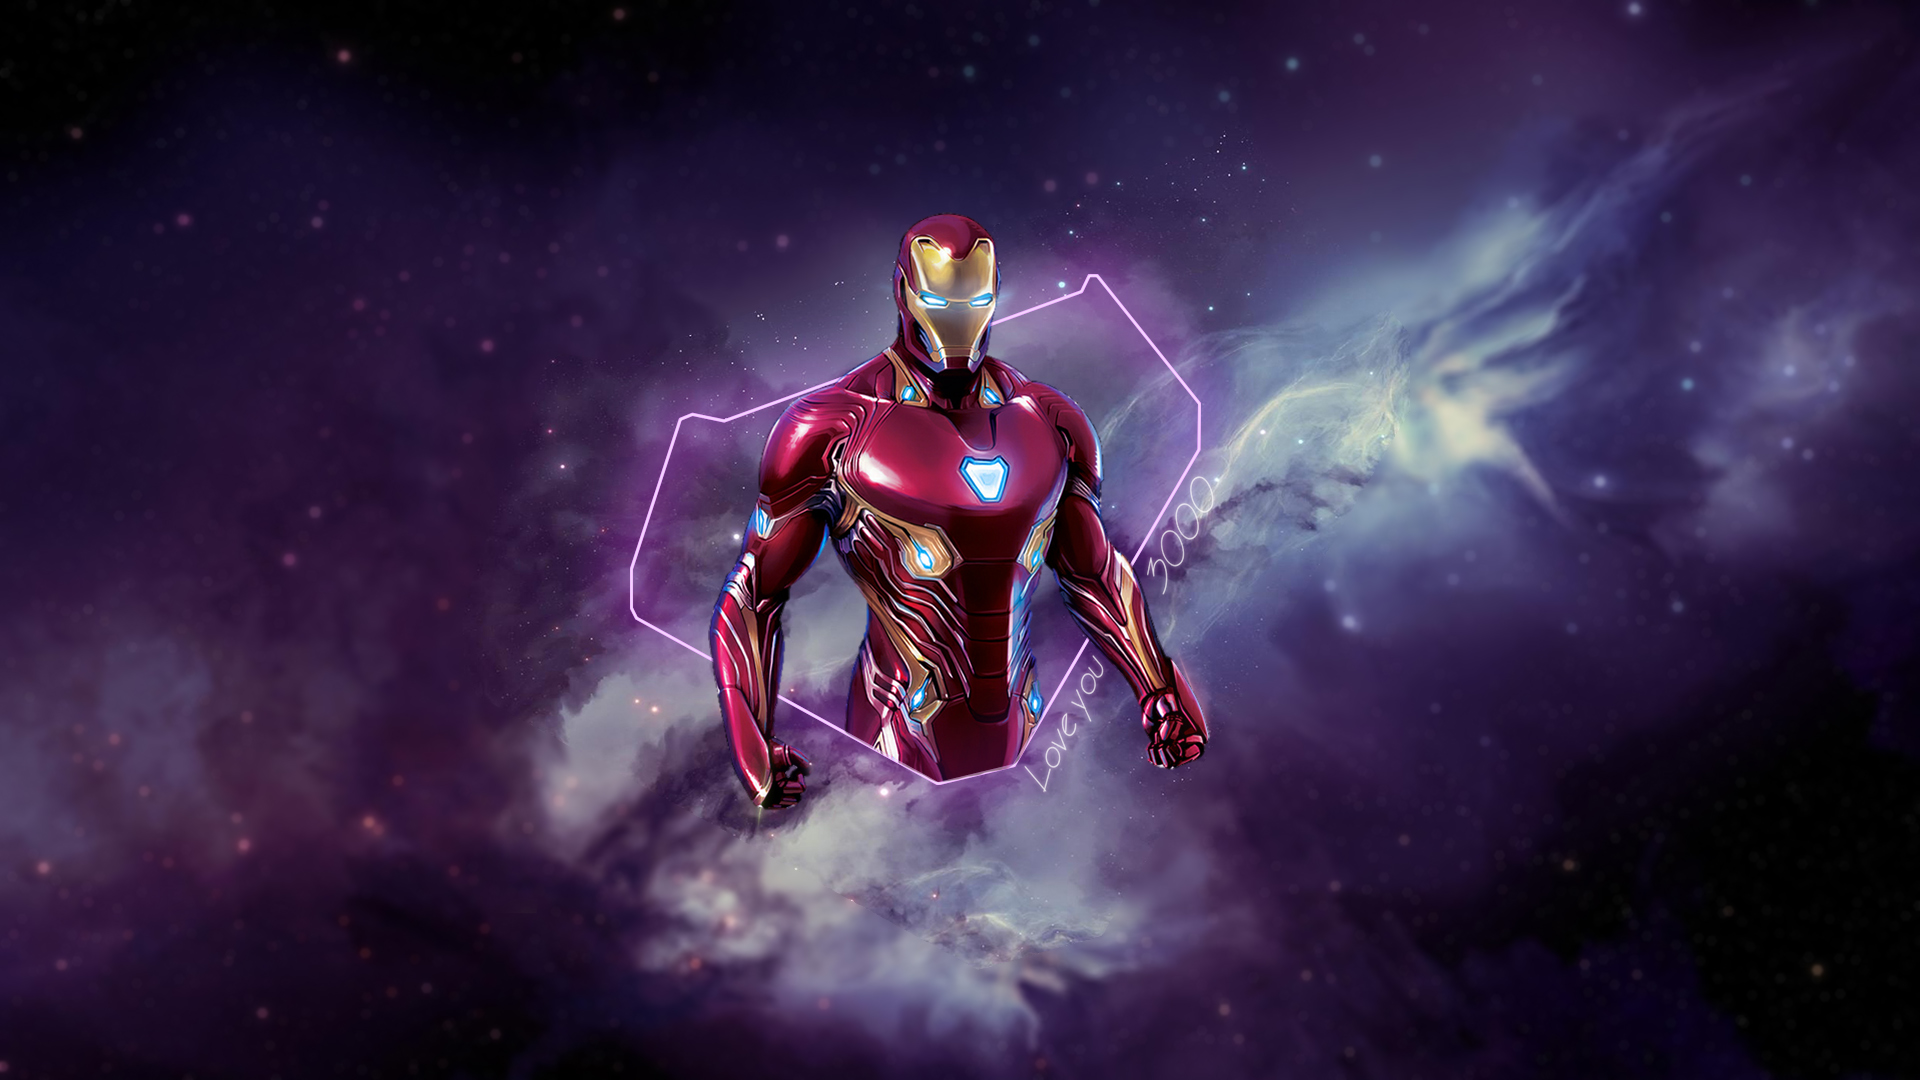 Tony Stark, Iron Man, Marvel Super Heroes, Avengers Endgame, digital art